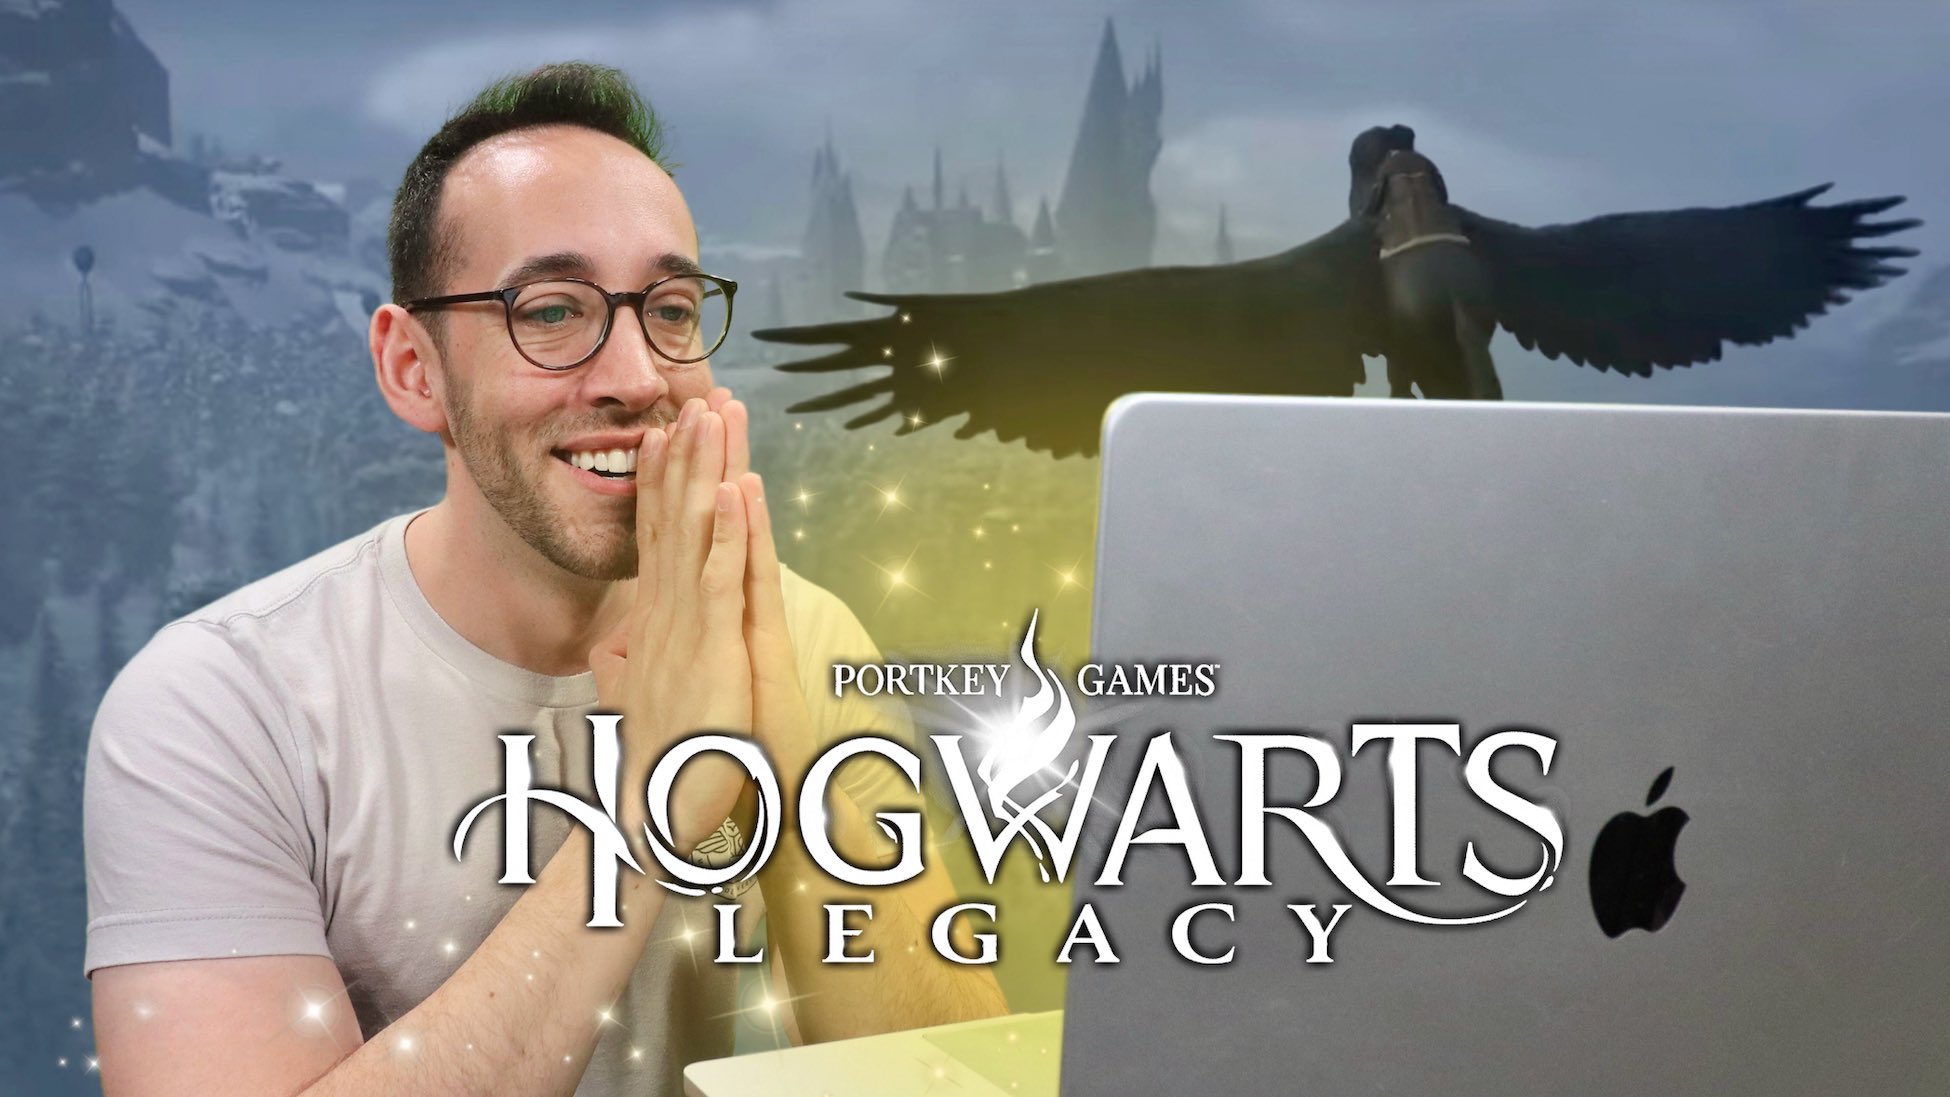 Hogwarts legacy: Encontre Promoções e o Menor Preço No Zoom